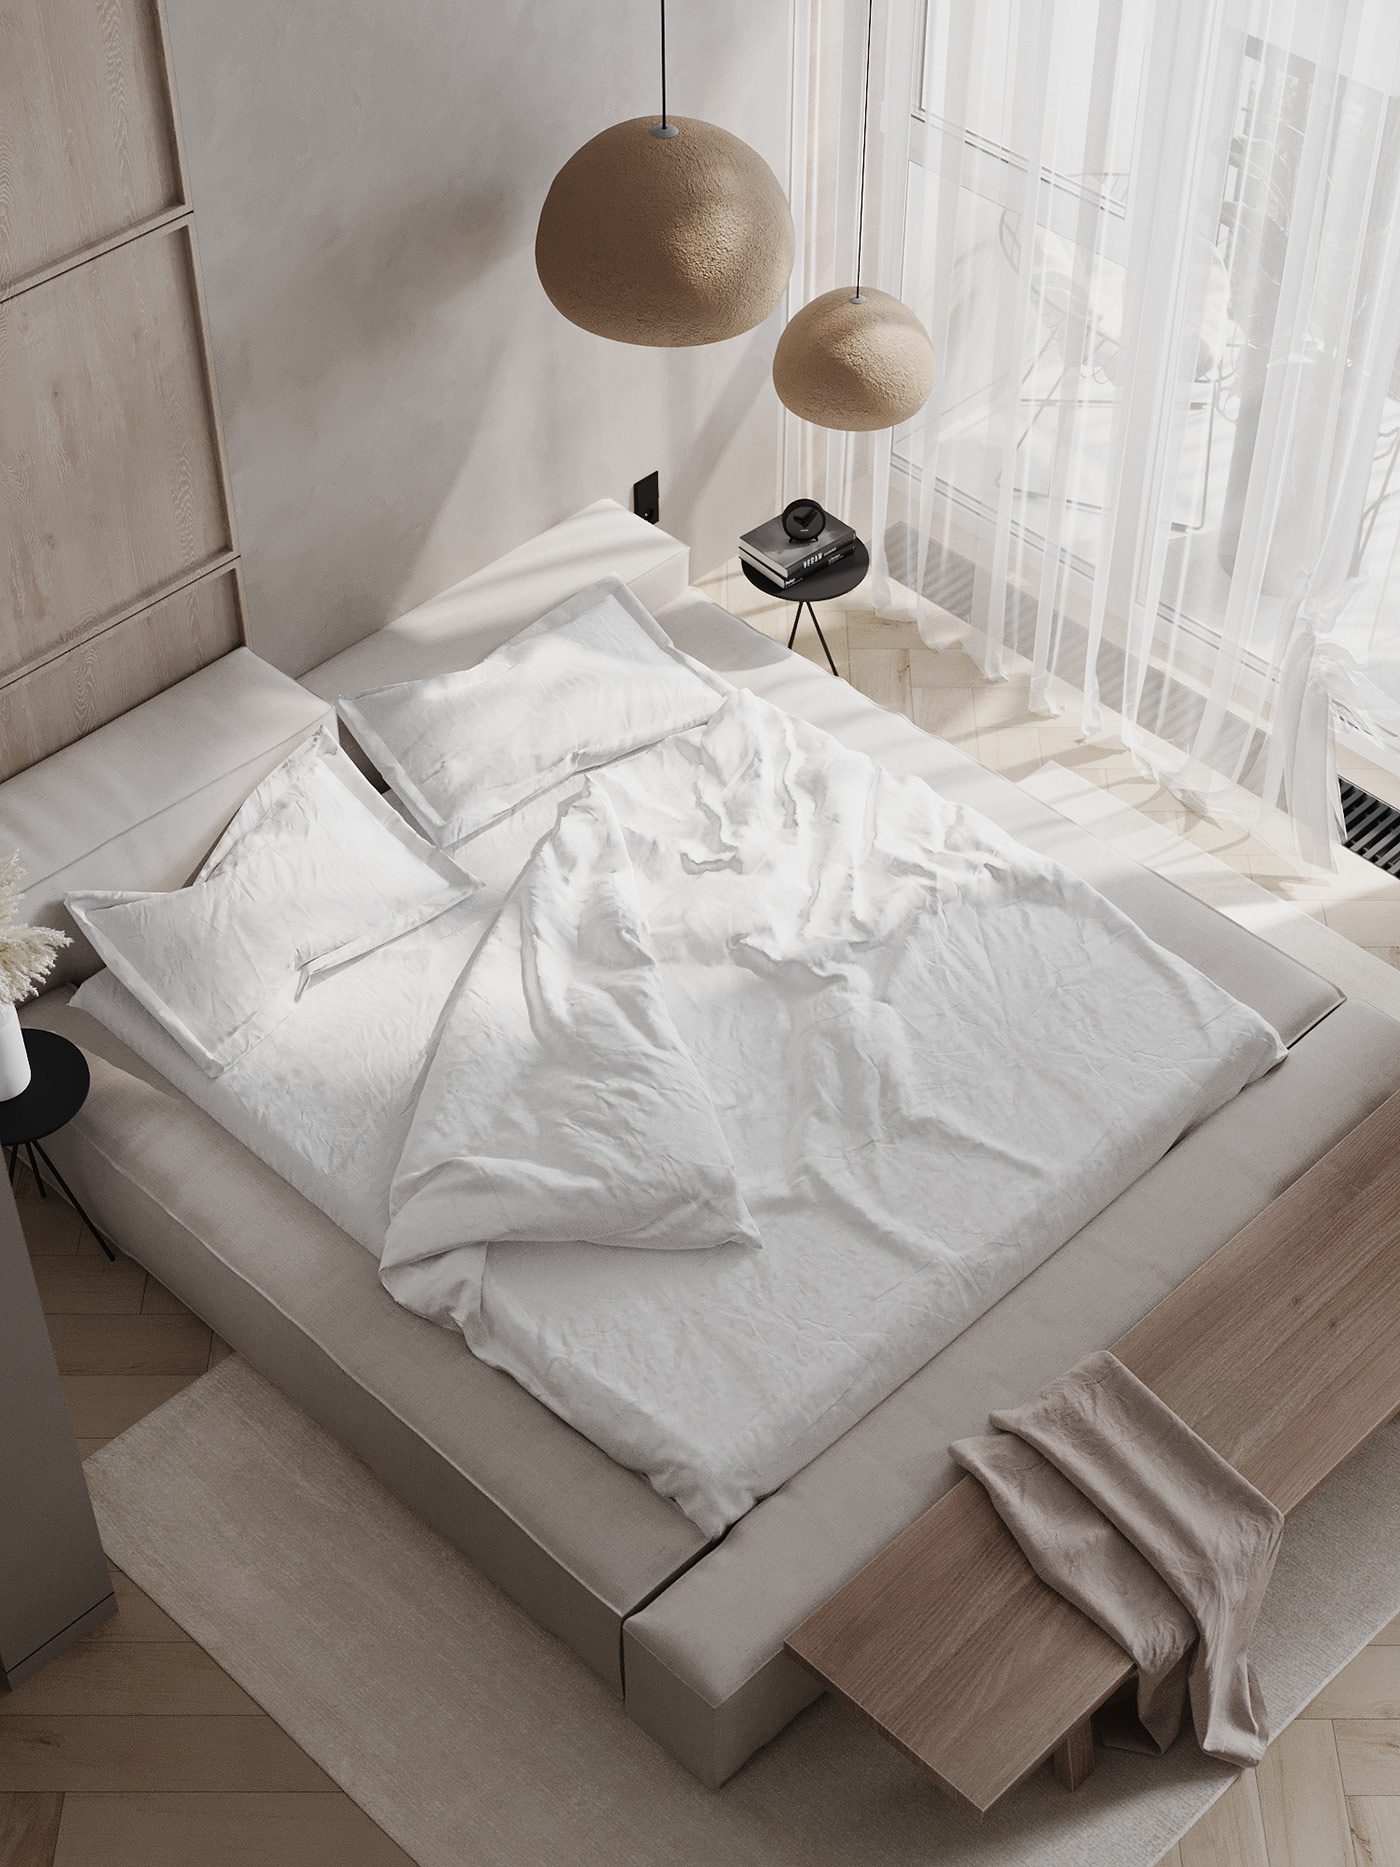 Gam màu trắng tinh khiết, thanh lịch, tinh tế tạo nên không gian phòng ngủ hoàn hảo